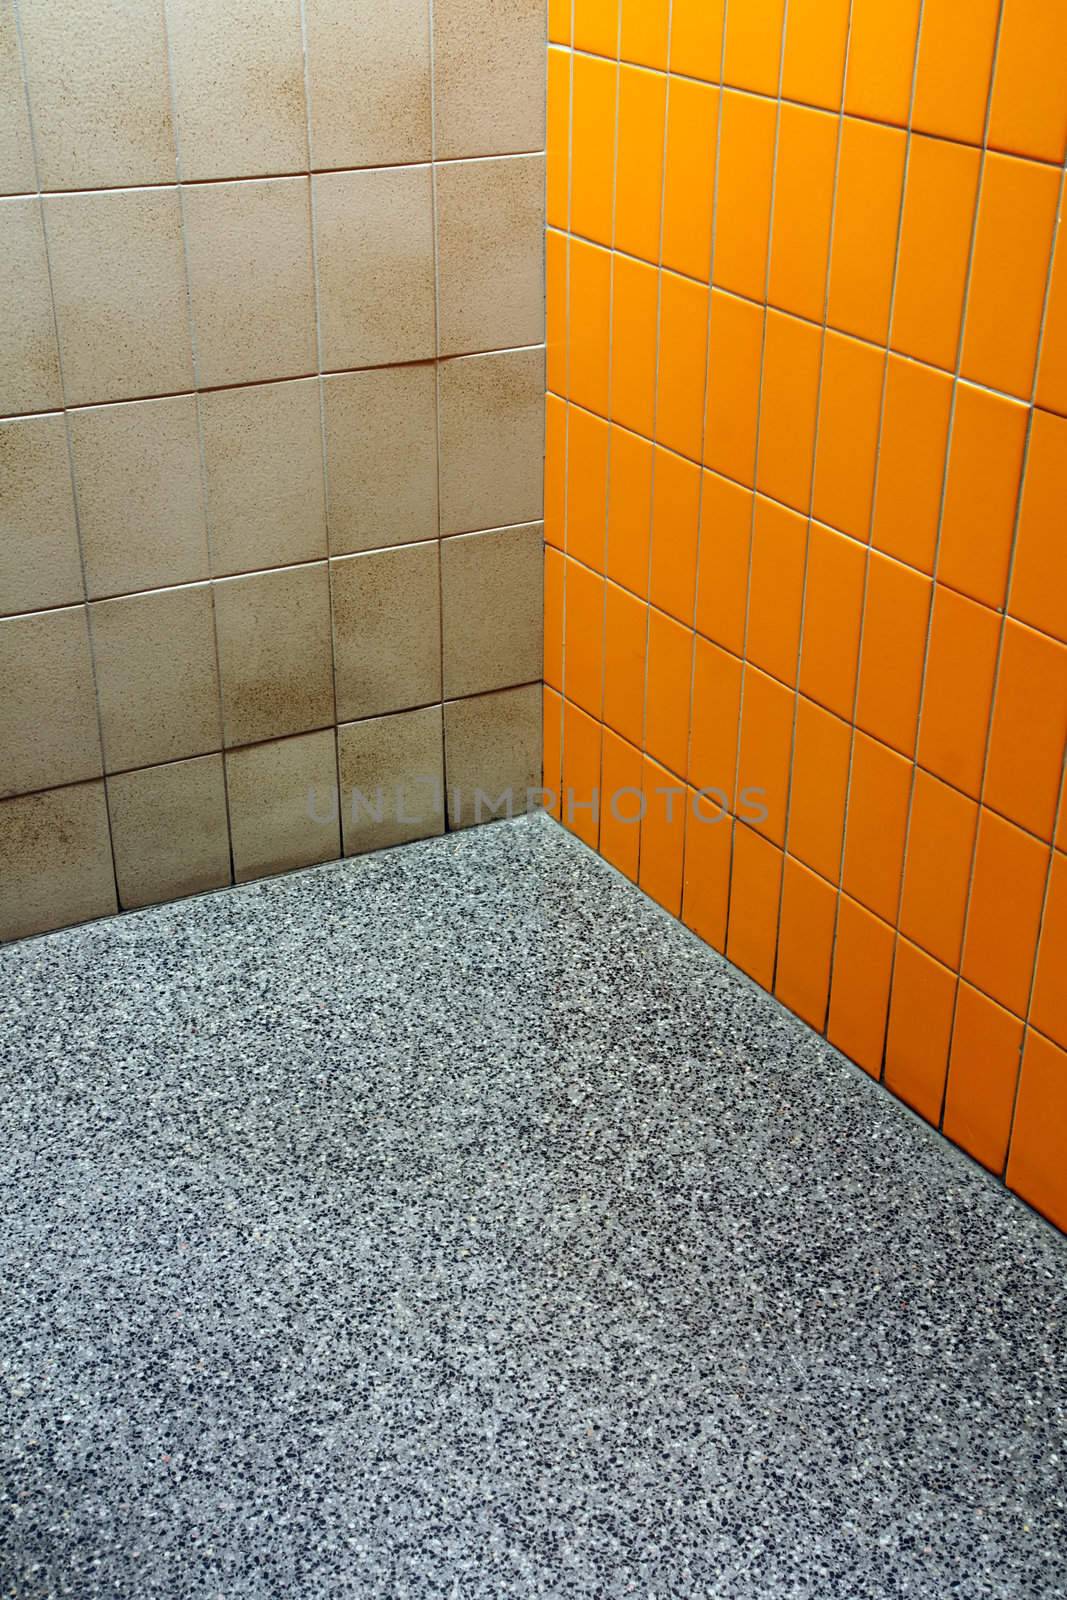 Bathroom funky corner by Mirage3